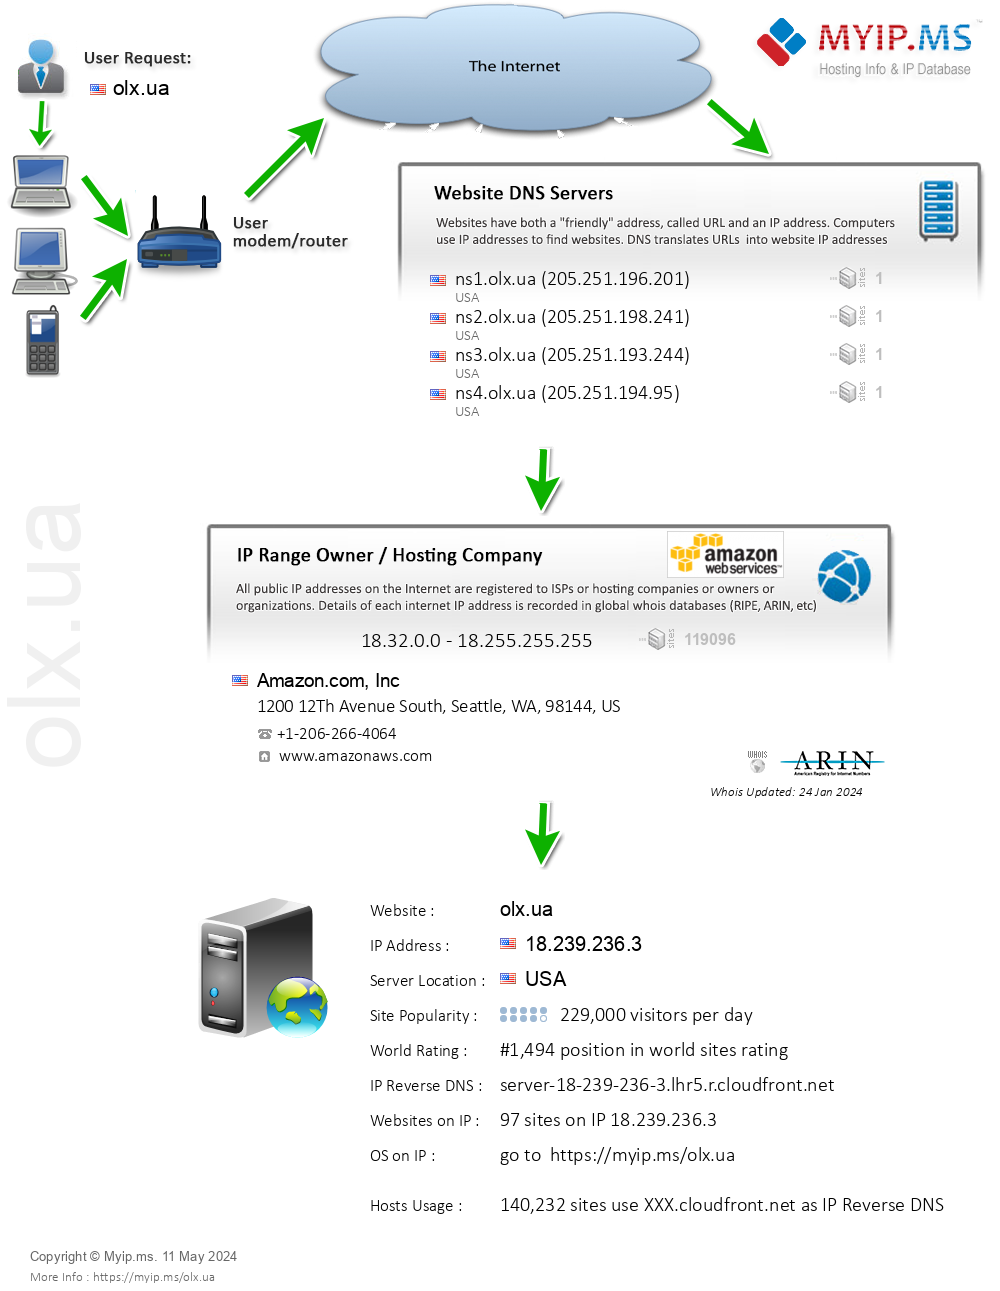 Olx.ua - Website Hosting Visual IP Diagram